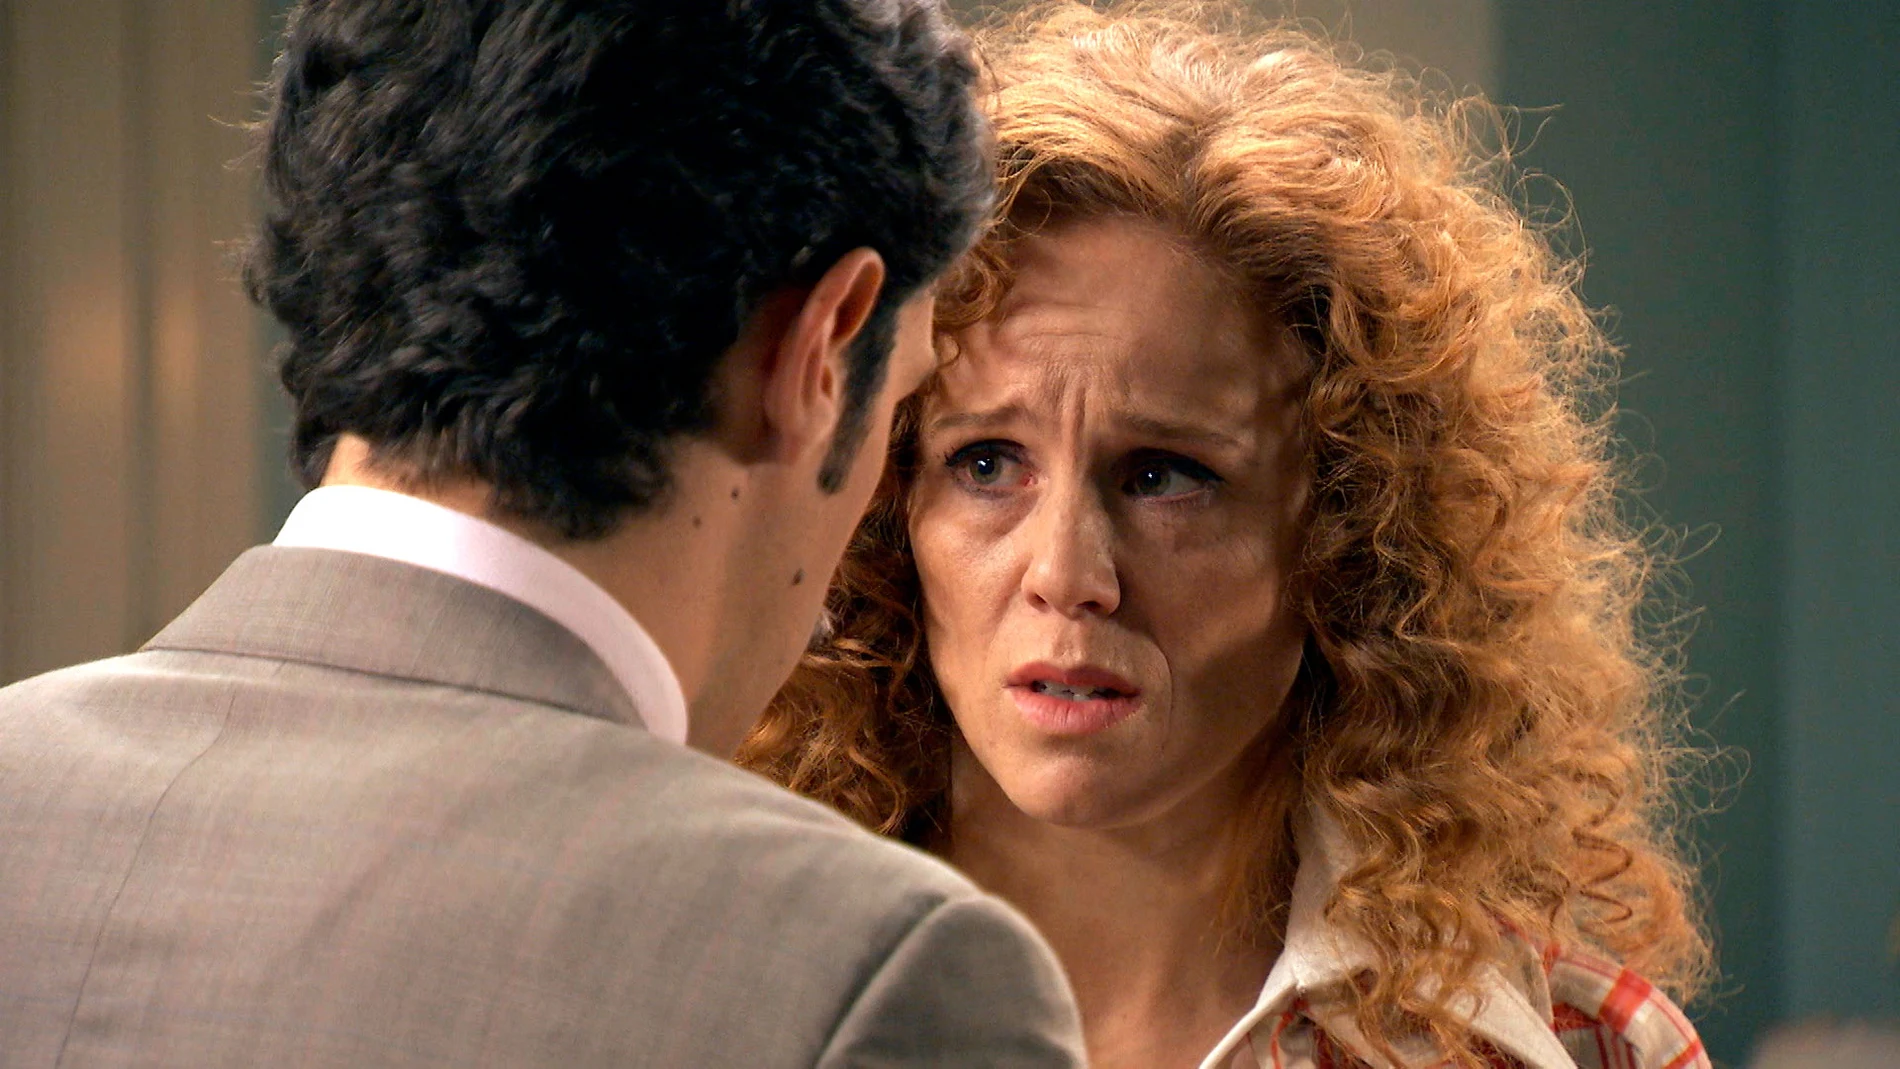 Natalia le suplica a Carlos: "No le cuentes a nadie lo que te he dicho"